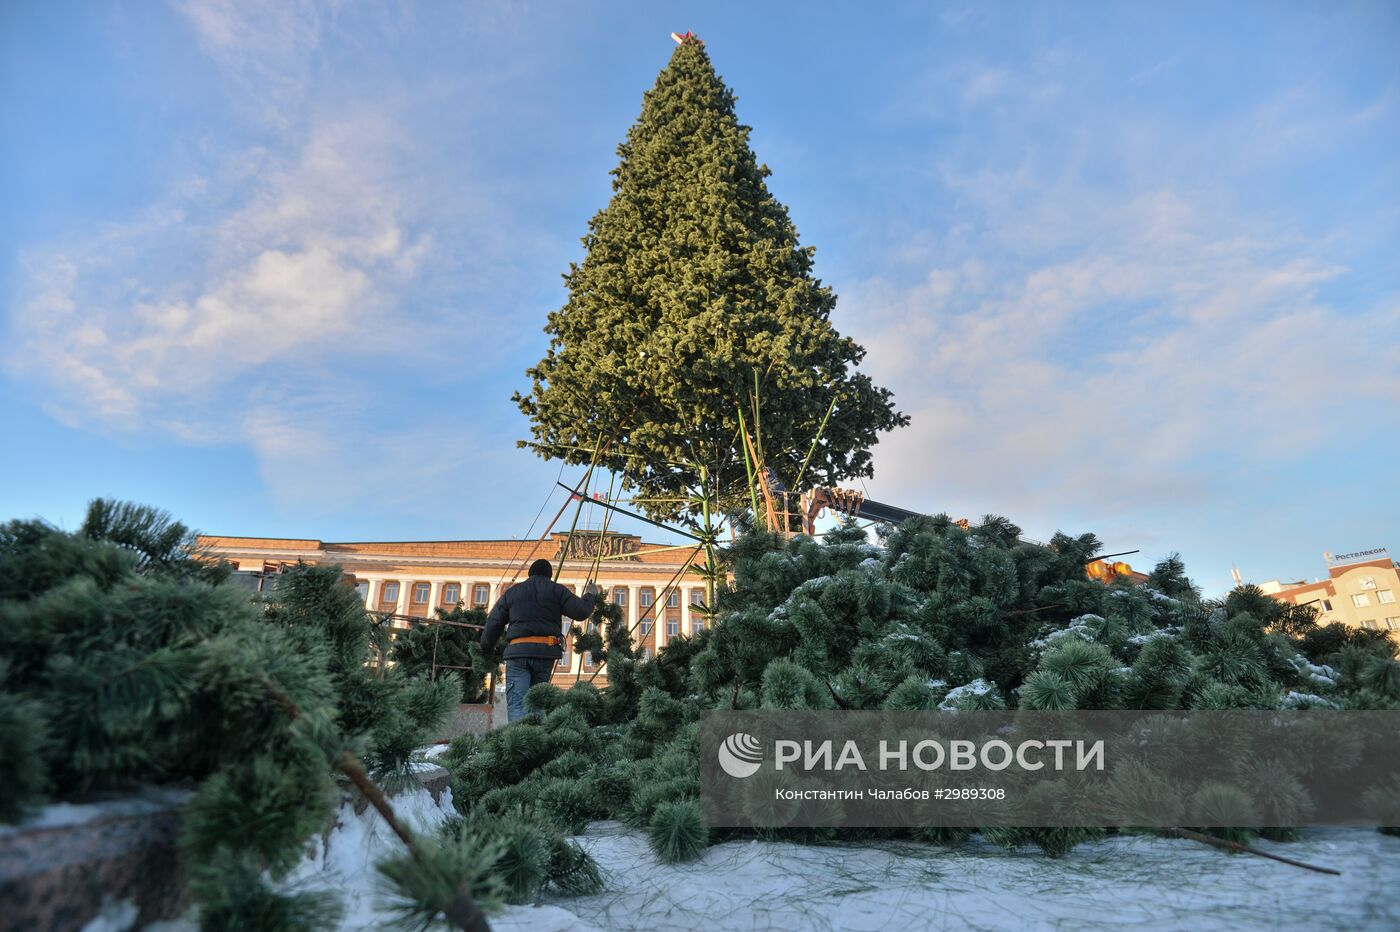 Установка главной новогодней елки в Великом Новгороде